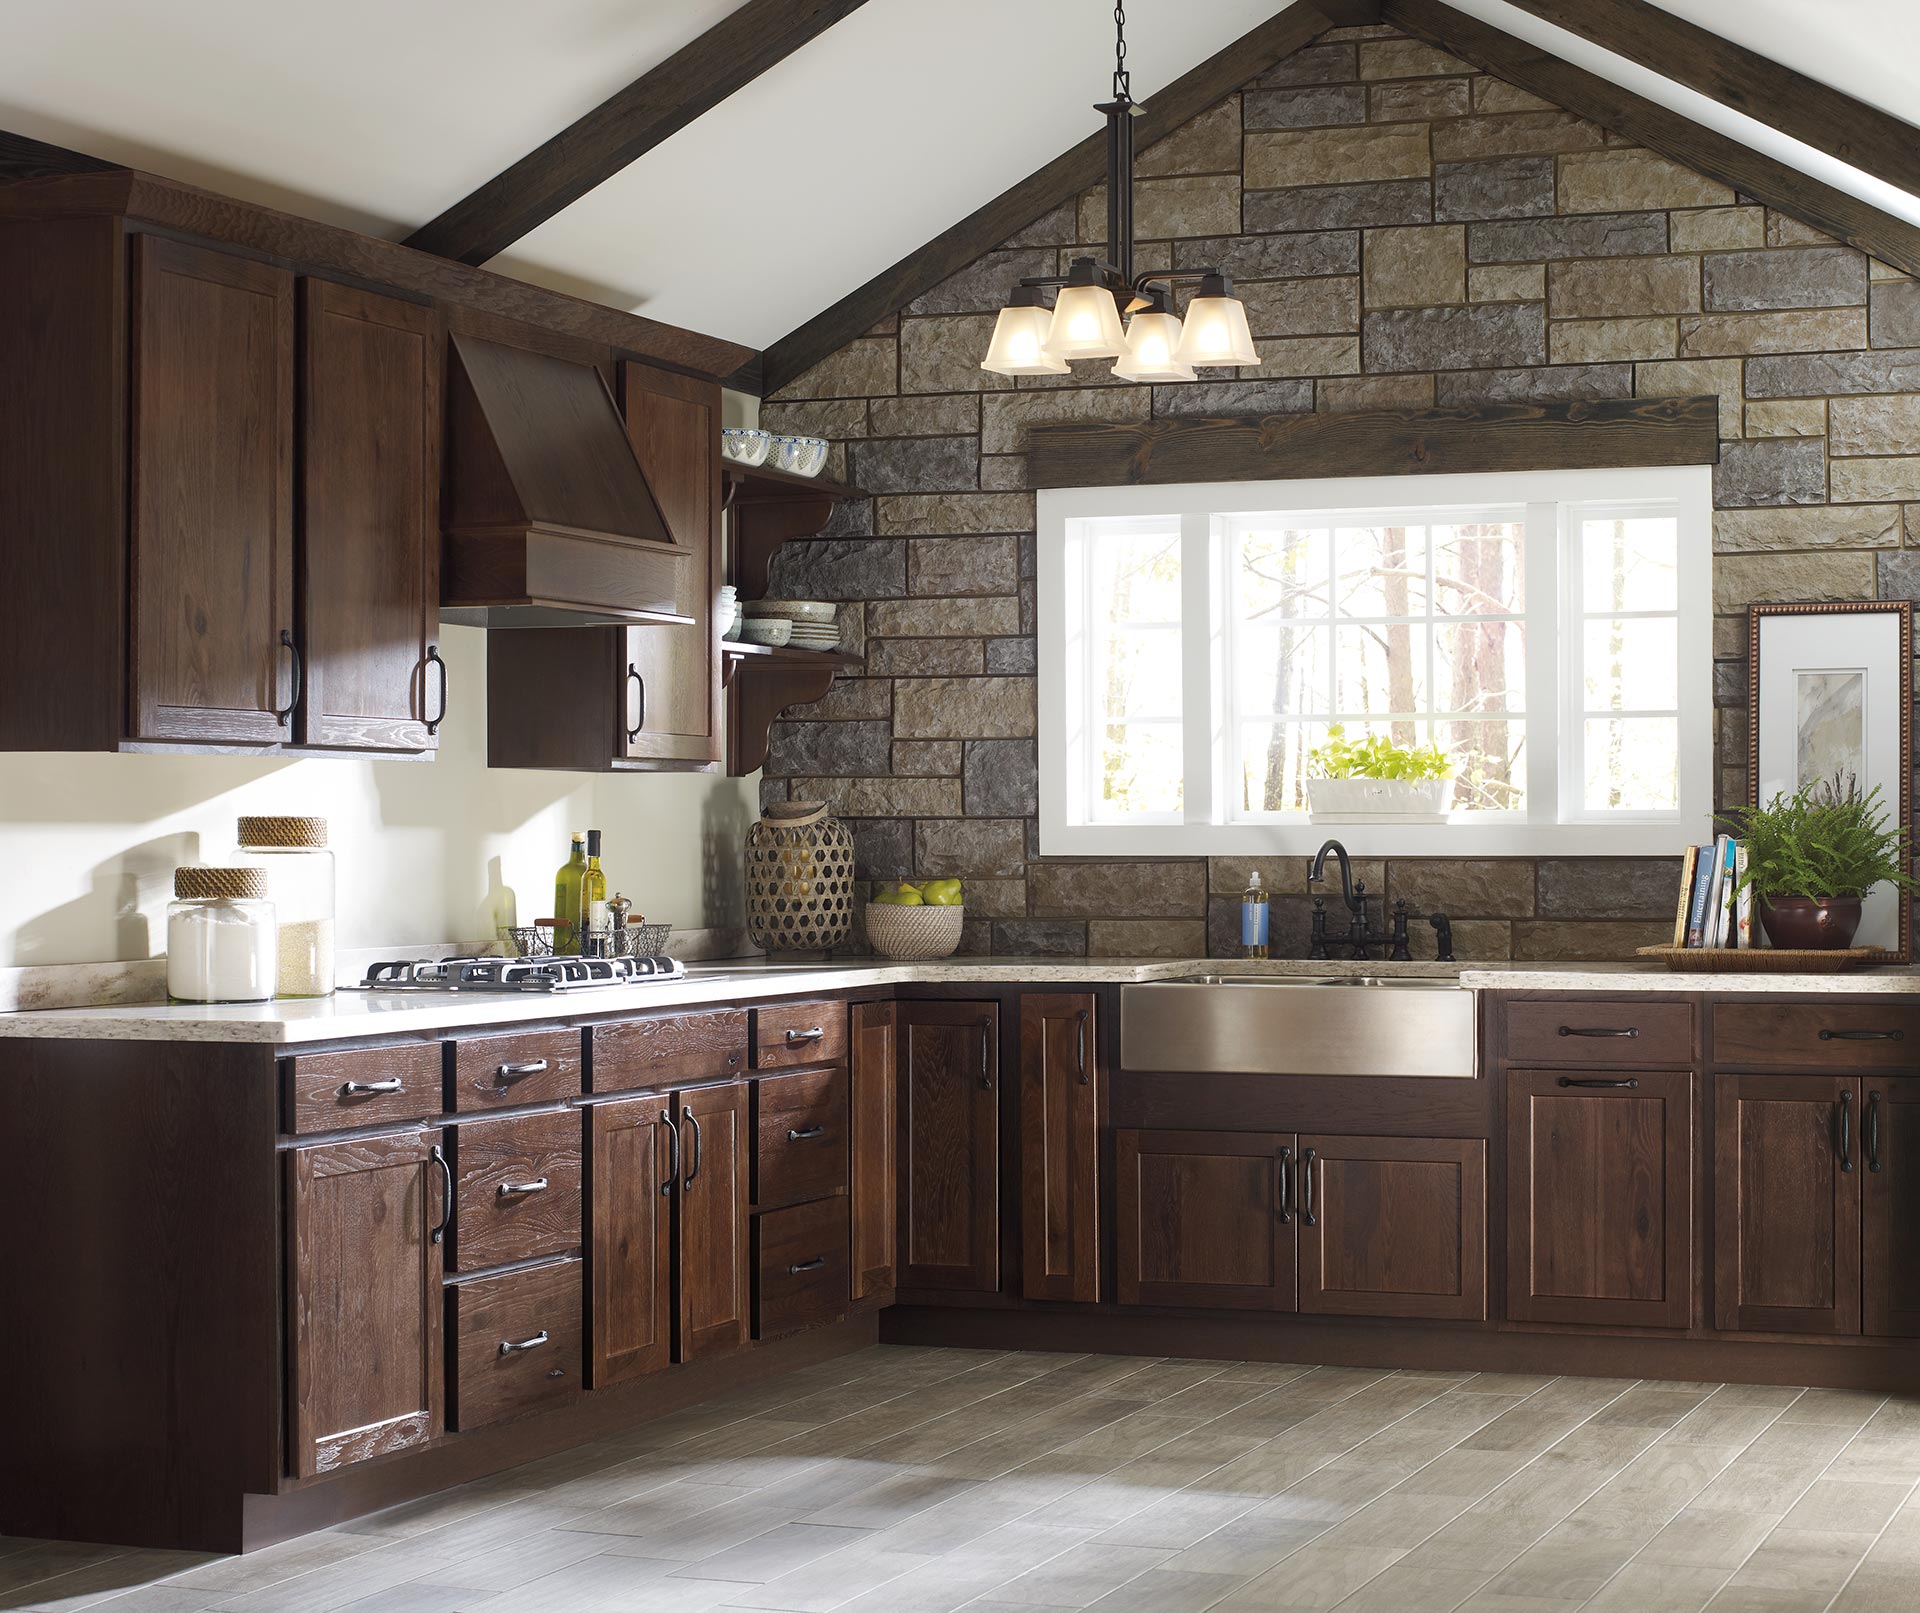 Transitional Woodgrain Kitchen Cabinets Homecrest Distinctive Kitchens